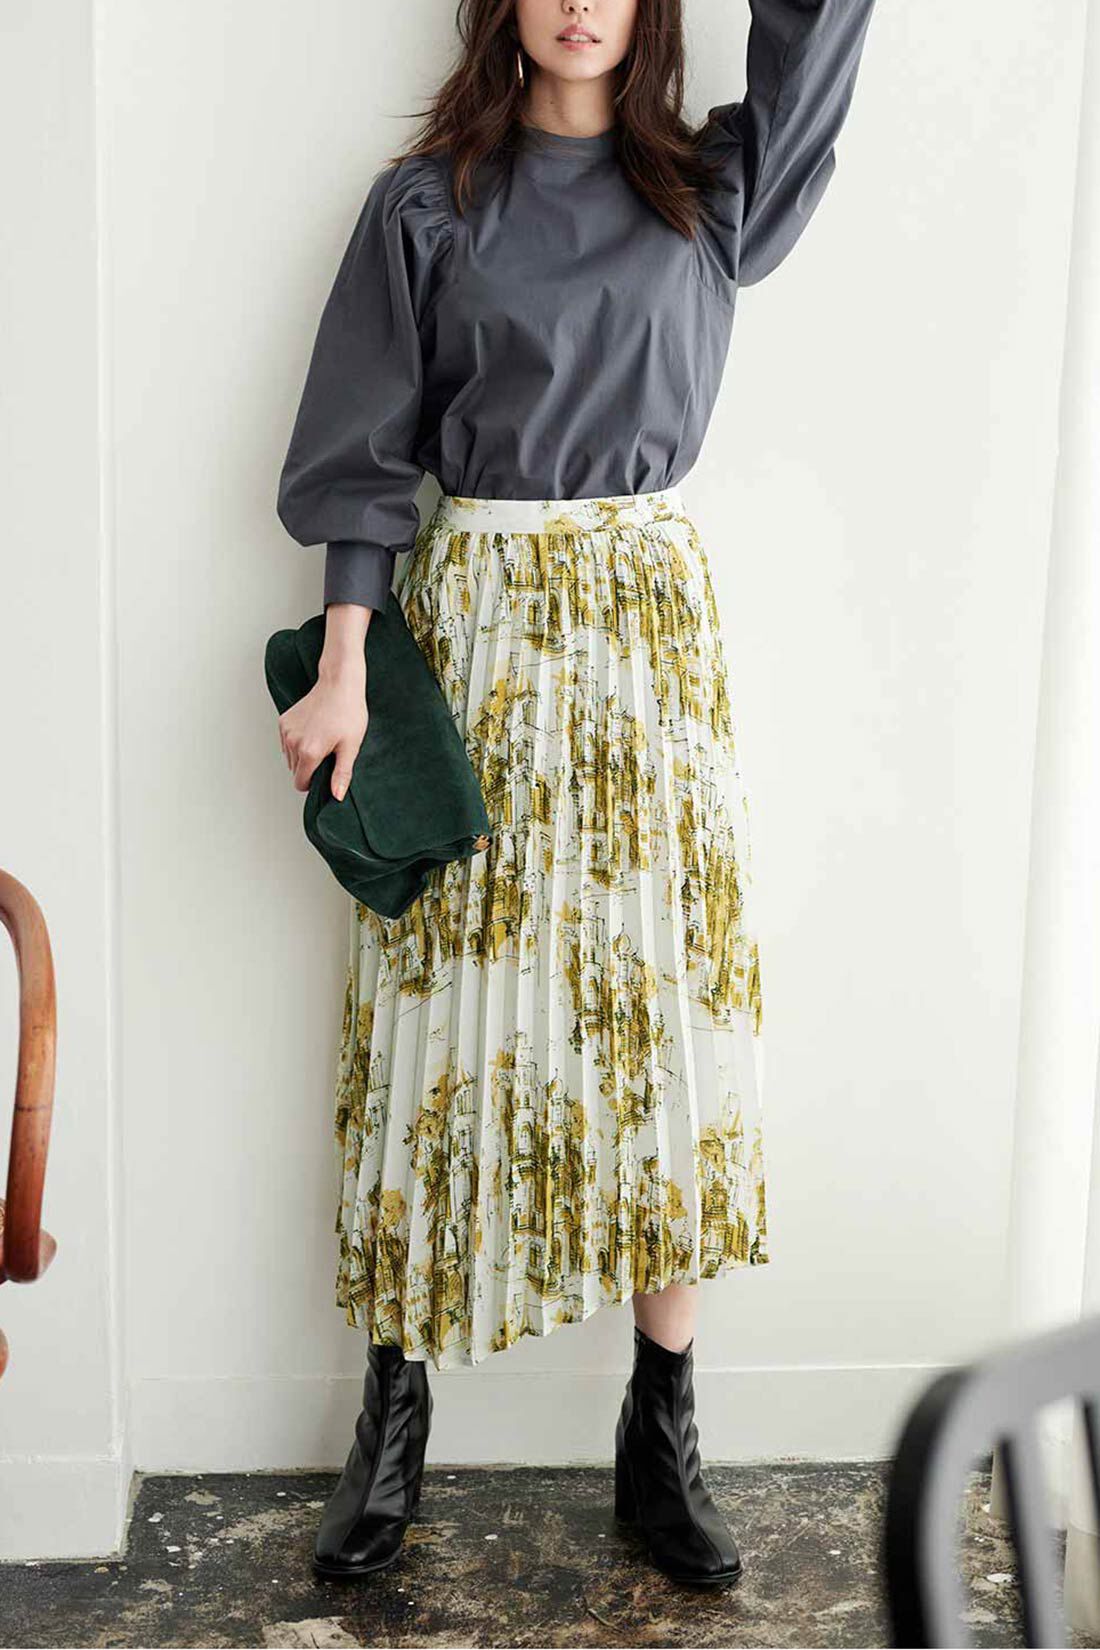 IEDIT|IEDIT[イディット]　ヴィンテージライクな趣のプリントプリーツスカート〈グリーン〉|※着用イメージです。お届けするカラーとは異なります。